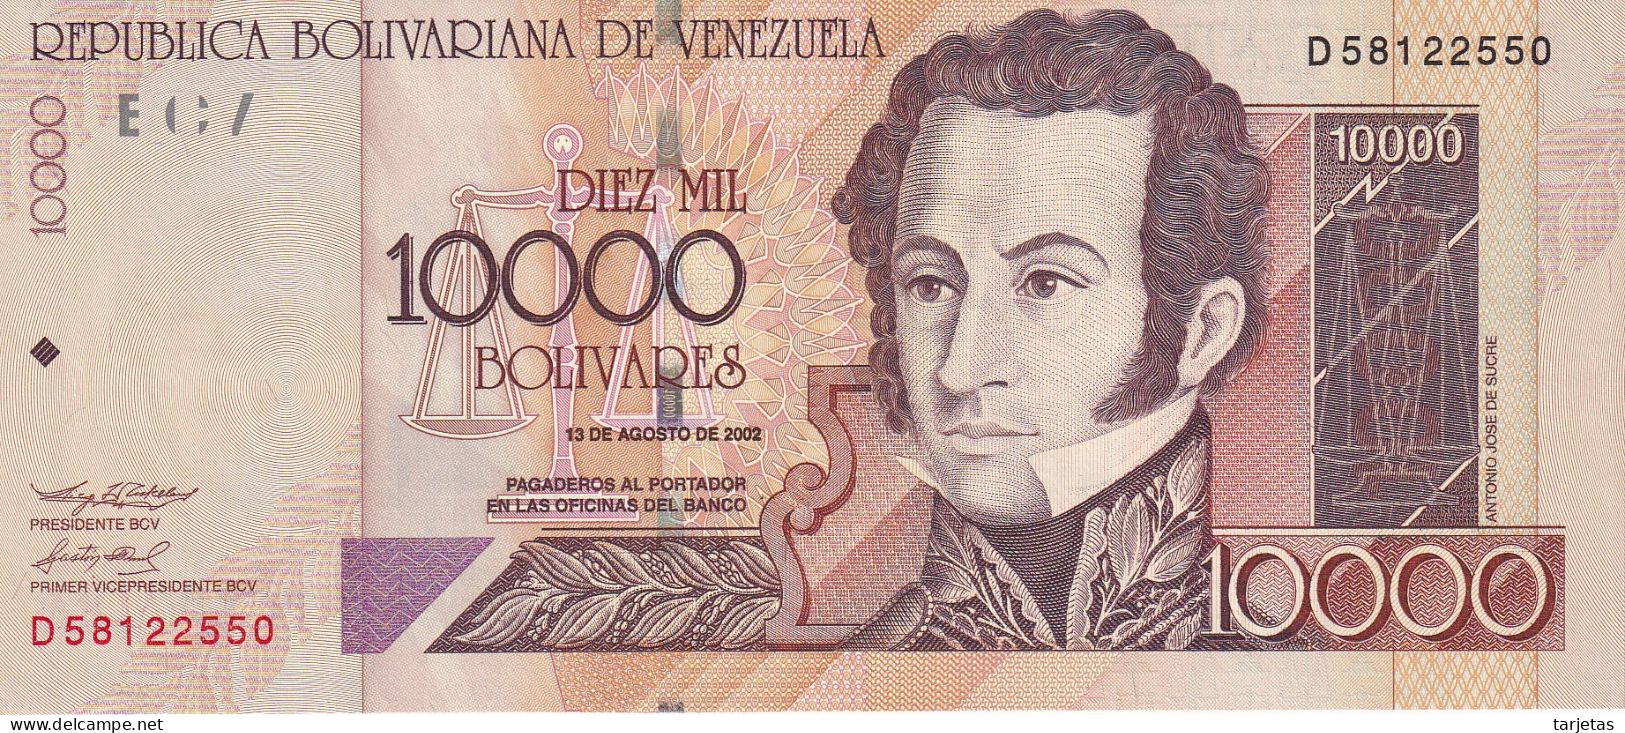 BILLETE DE VENEZUELA DE 10000 BOLIVARES DEL AÑO 2002 SIN CIRCULAR (UNC) (BANKNOTE) - Venezuela